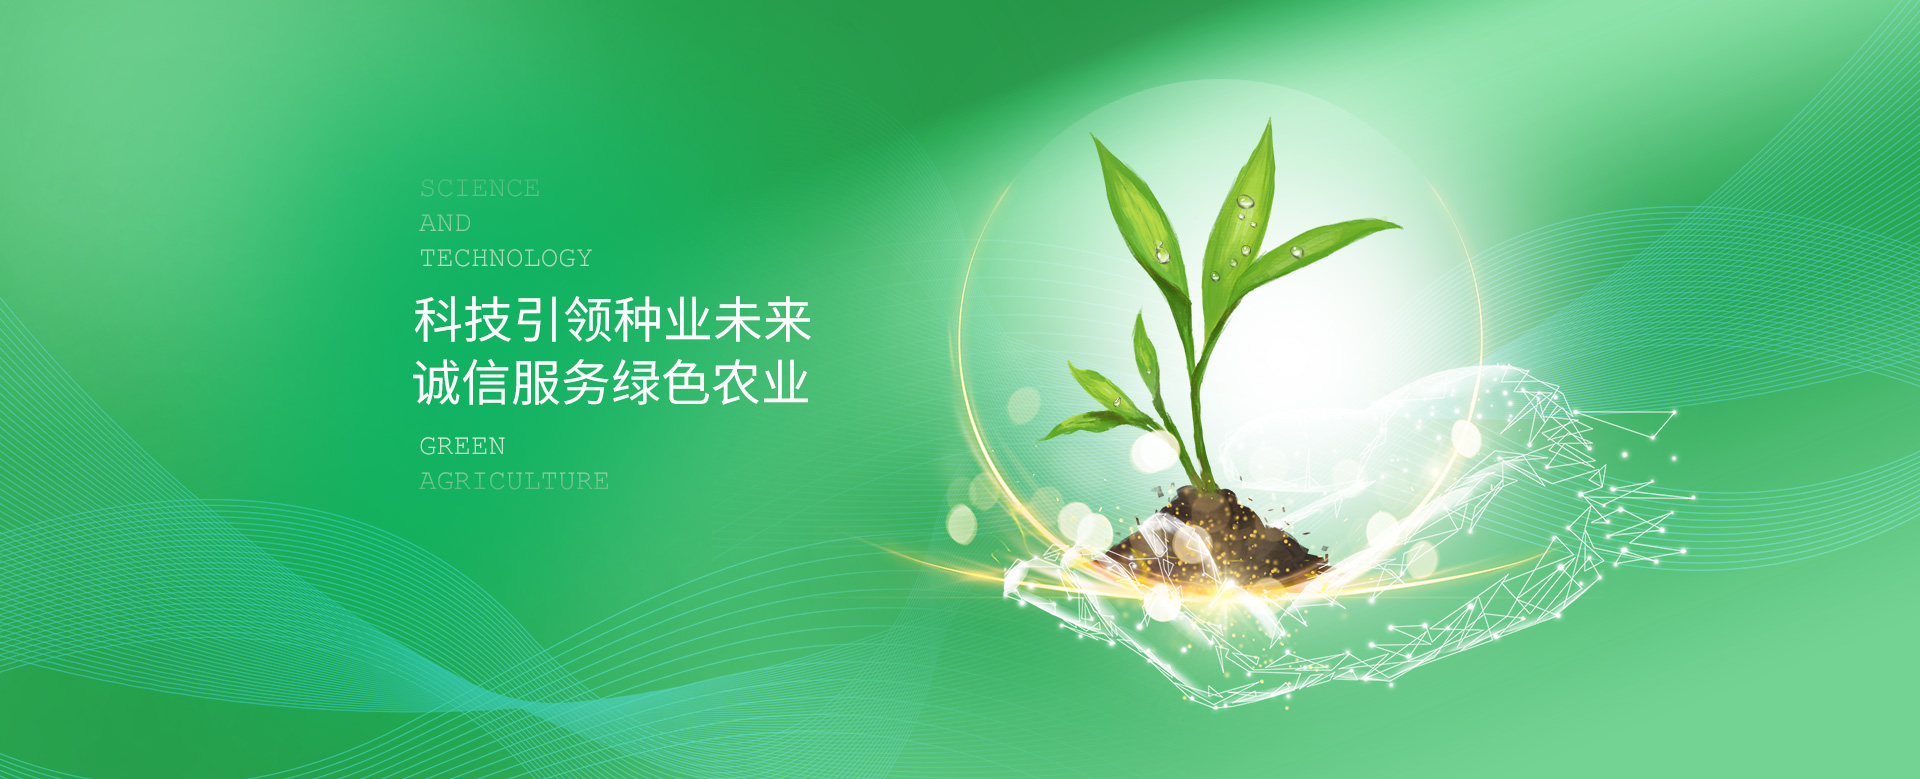 关于当前产品3k彩票·(中国)官方网站的成功案例等相关图片